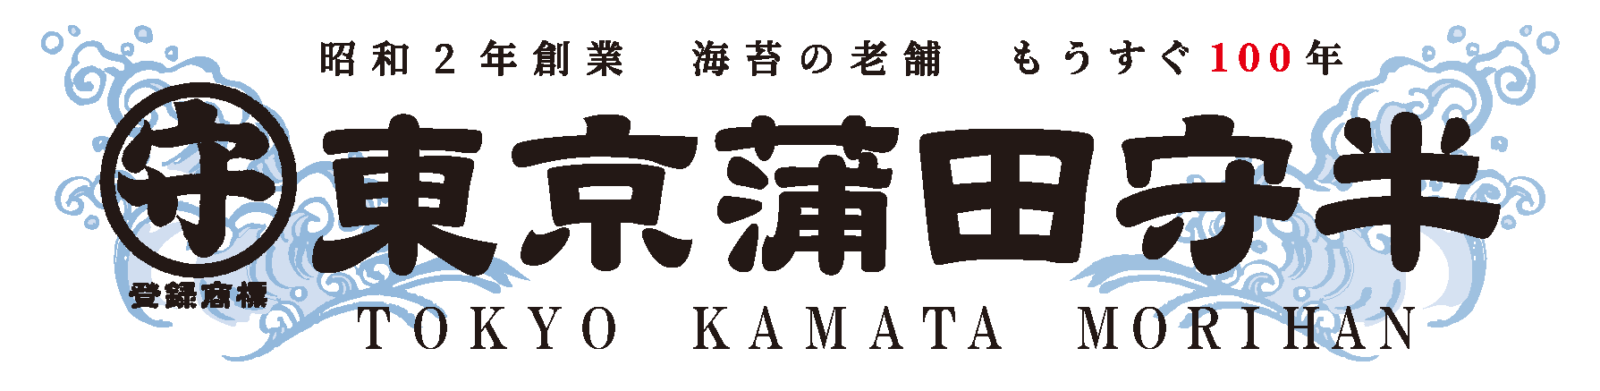 TOKYO KAMATA MORIHAN CO., LTD.